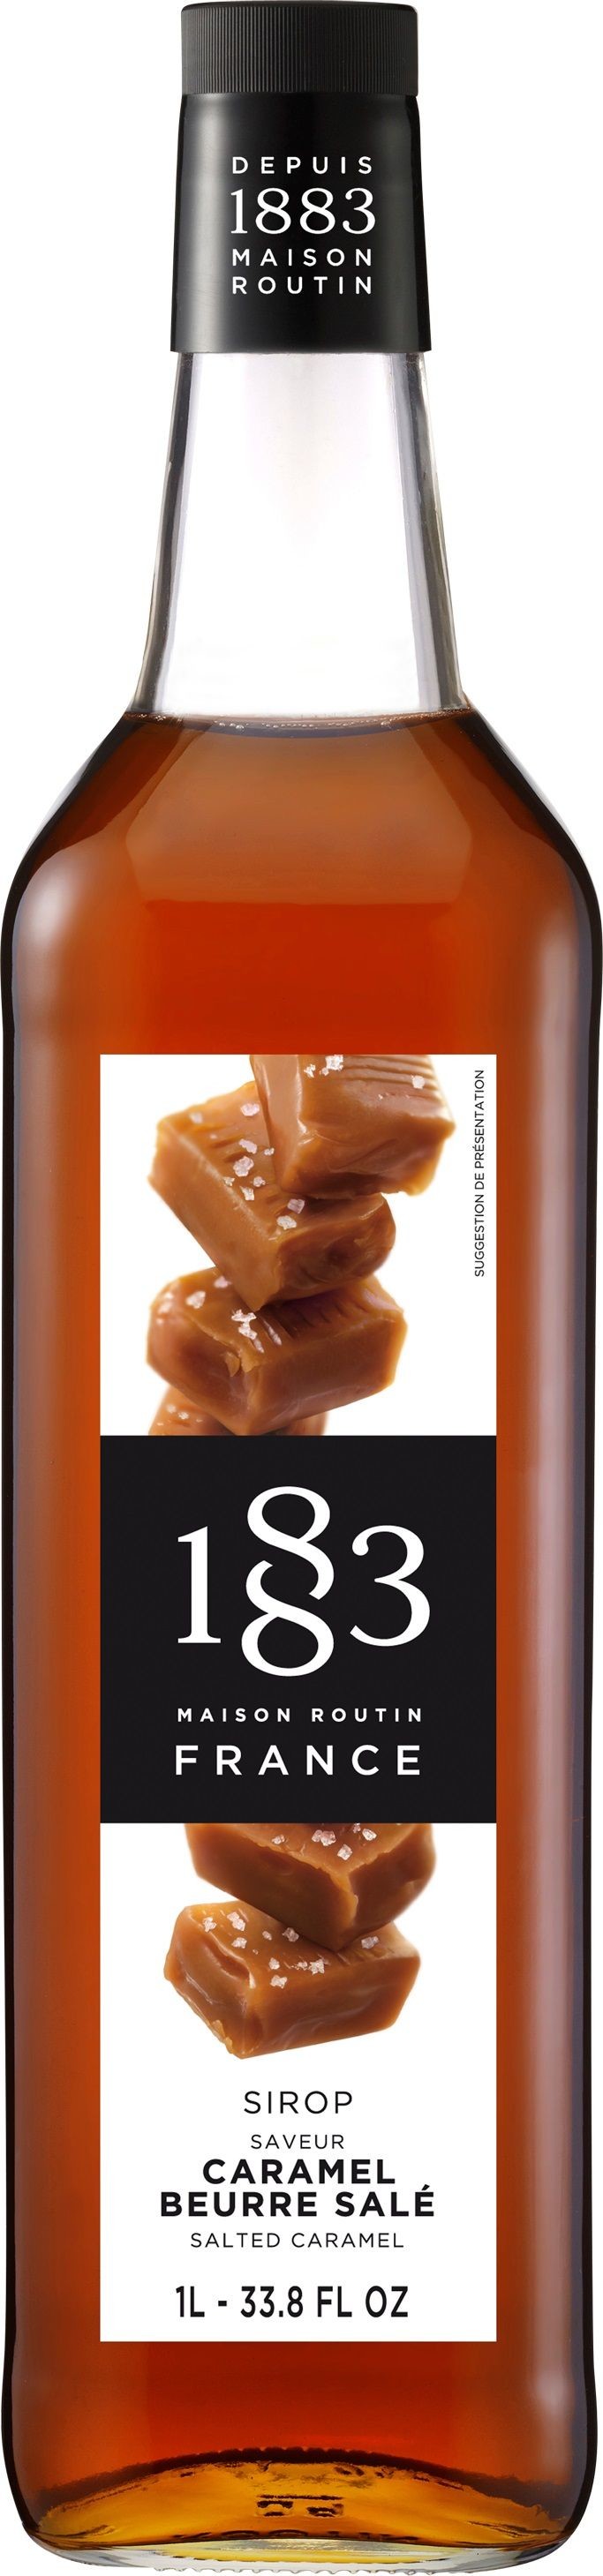 Routin 1883 sirop de Caramel Beuure Salé 1L 0%